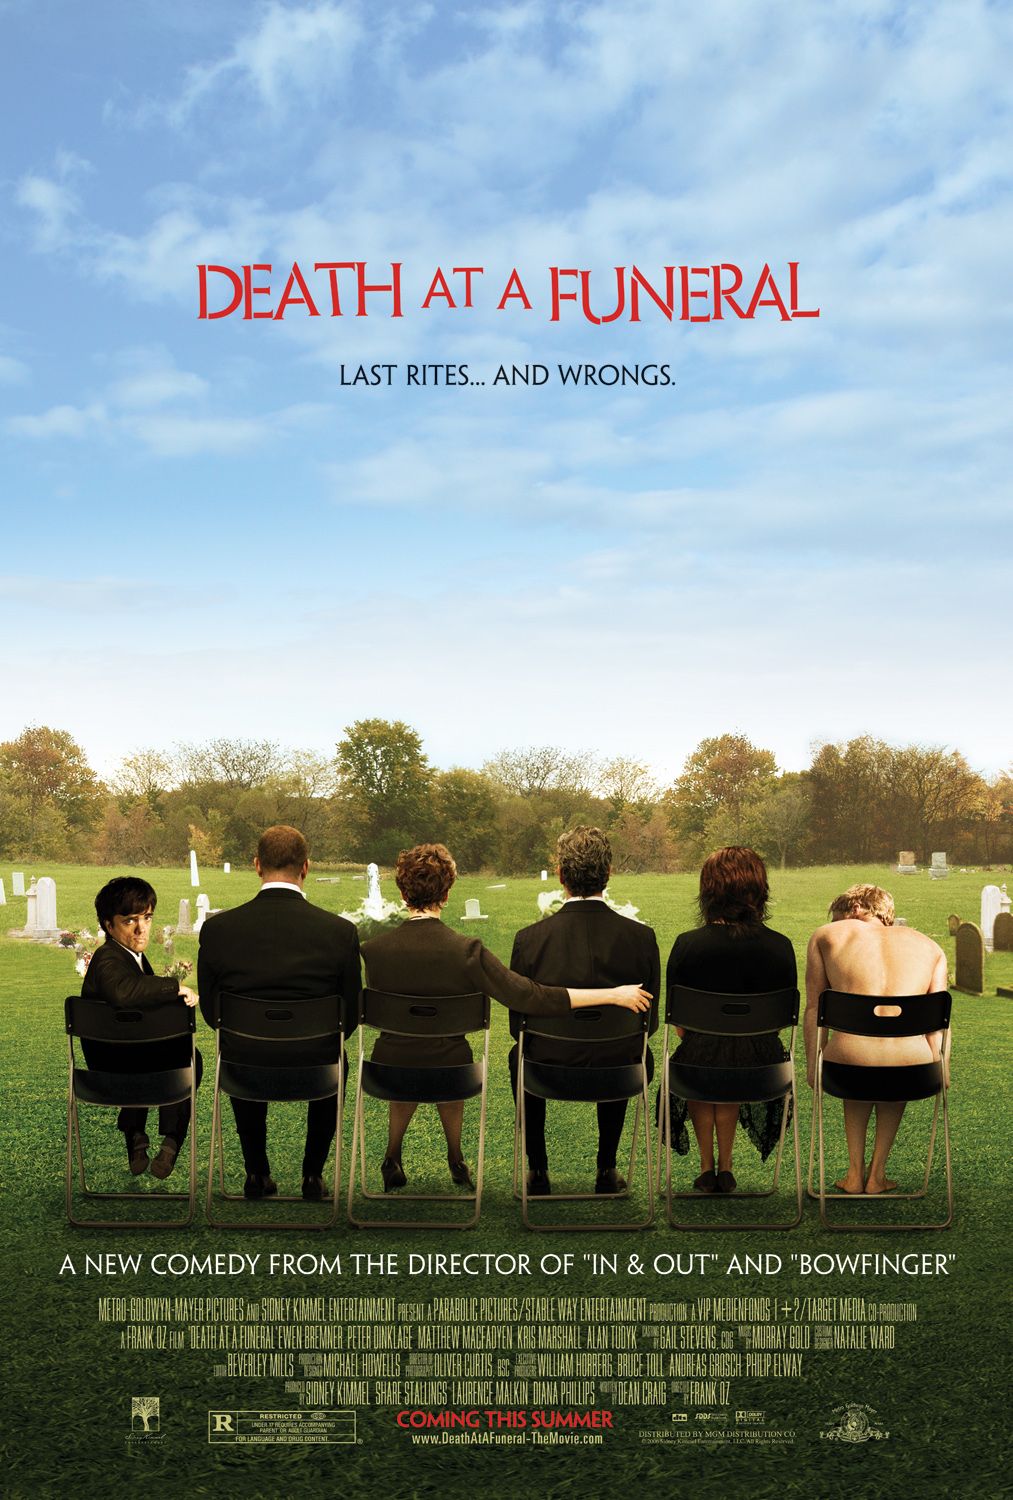 Постер - Смерть на похоронах: 1013x1500 / 278 Кб